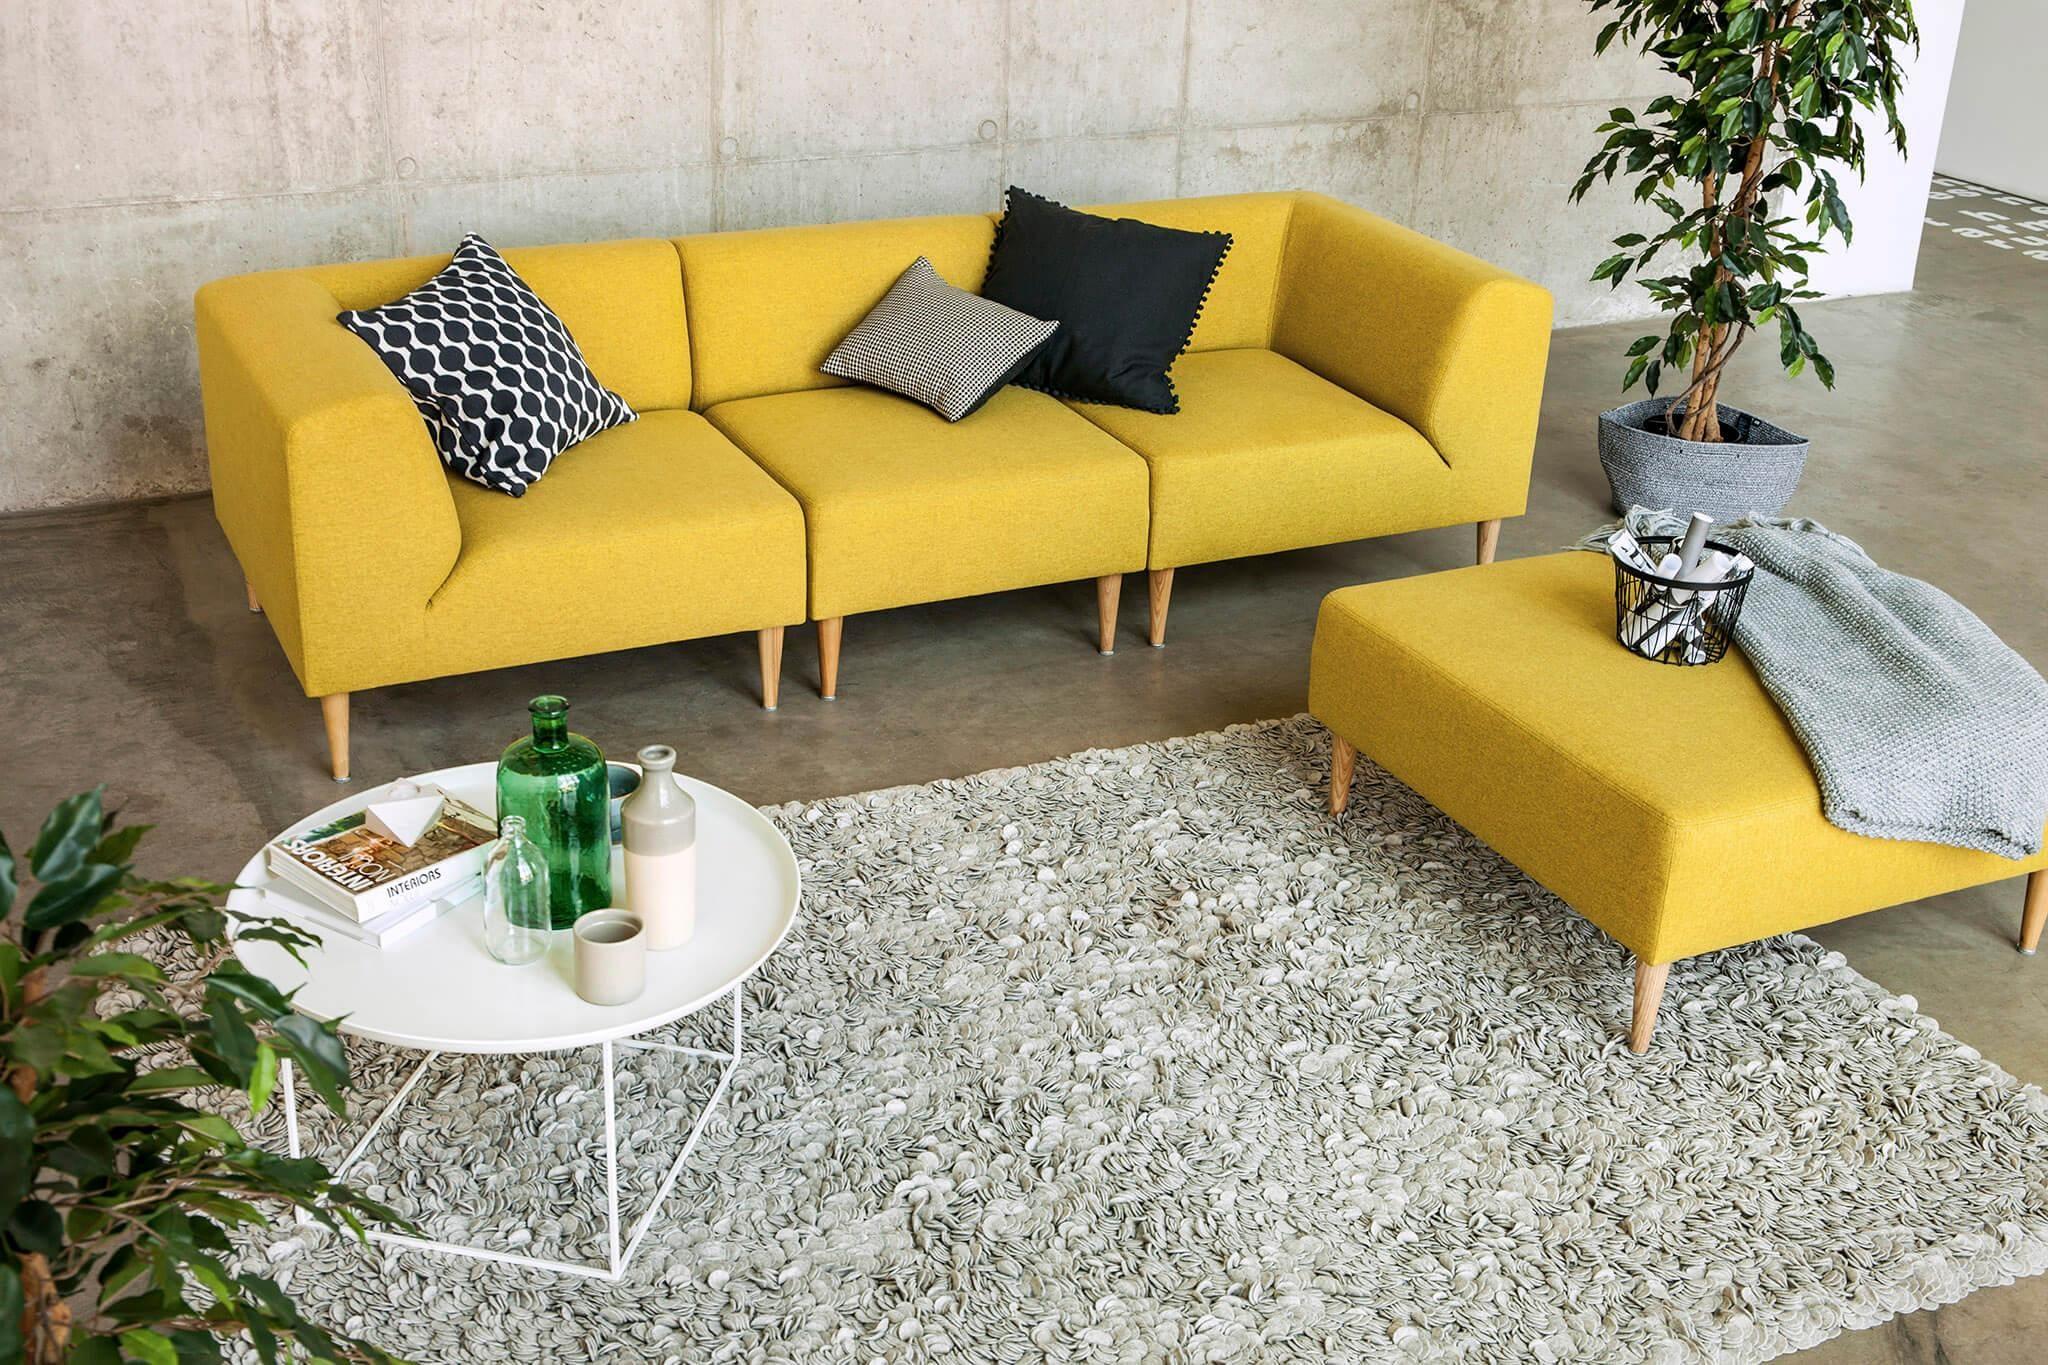 Zeit zum #Kuscheln auf dem #Sofa ! #skandinavisch #gelb und #cool #modulsofa #mood